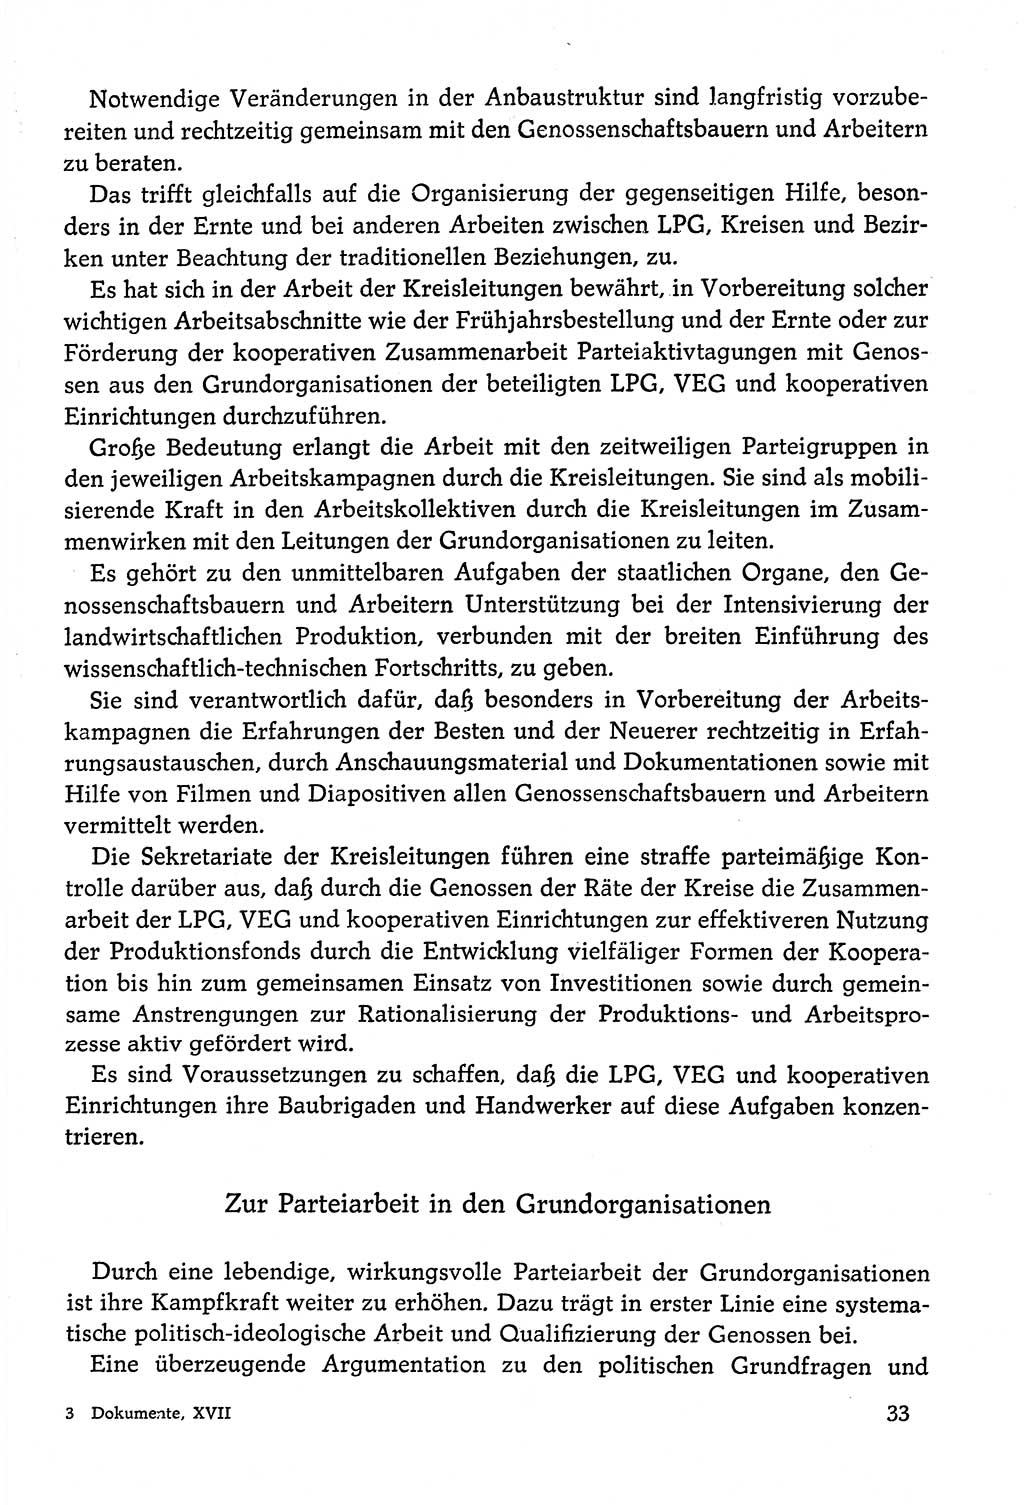 Dokumente der Sozialistischen Einheitspartei Deutschlands (SED) [Deutsche Demokratische Republik (DDR)] 1978-1979, Seite 33 (Dok. SED DDR 1978-1979, S. 33)